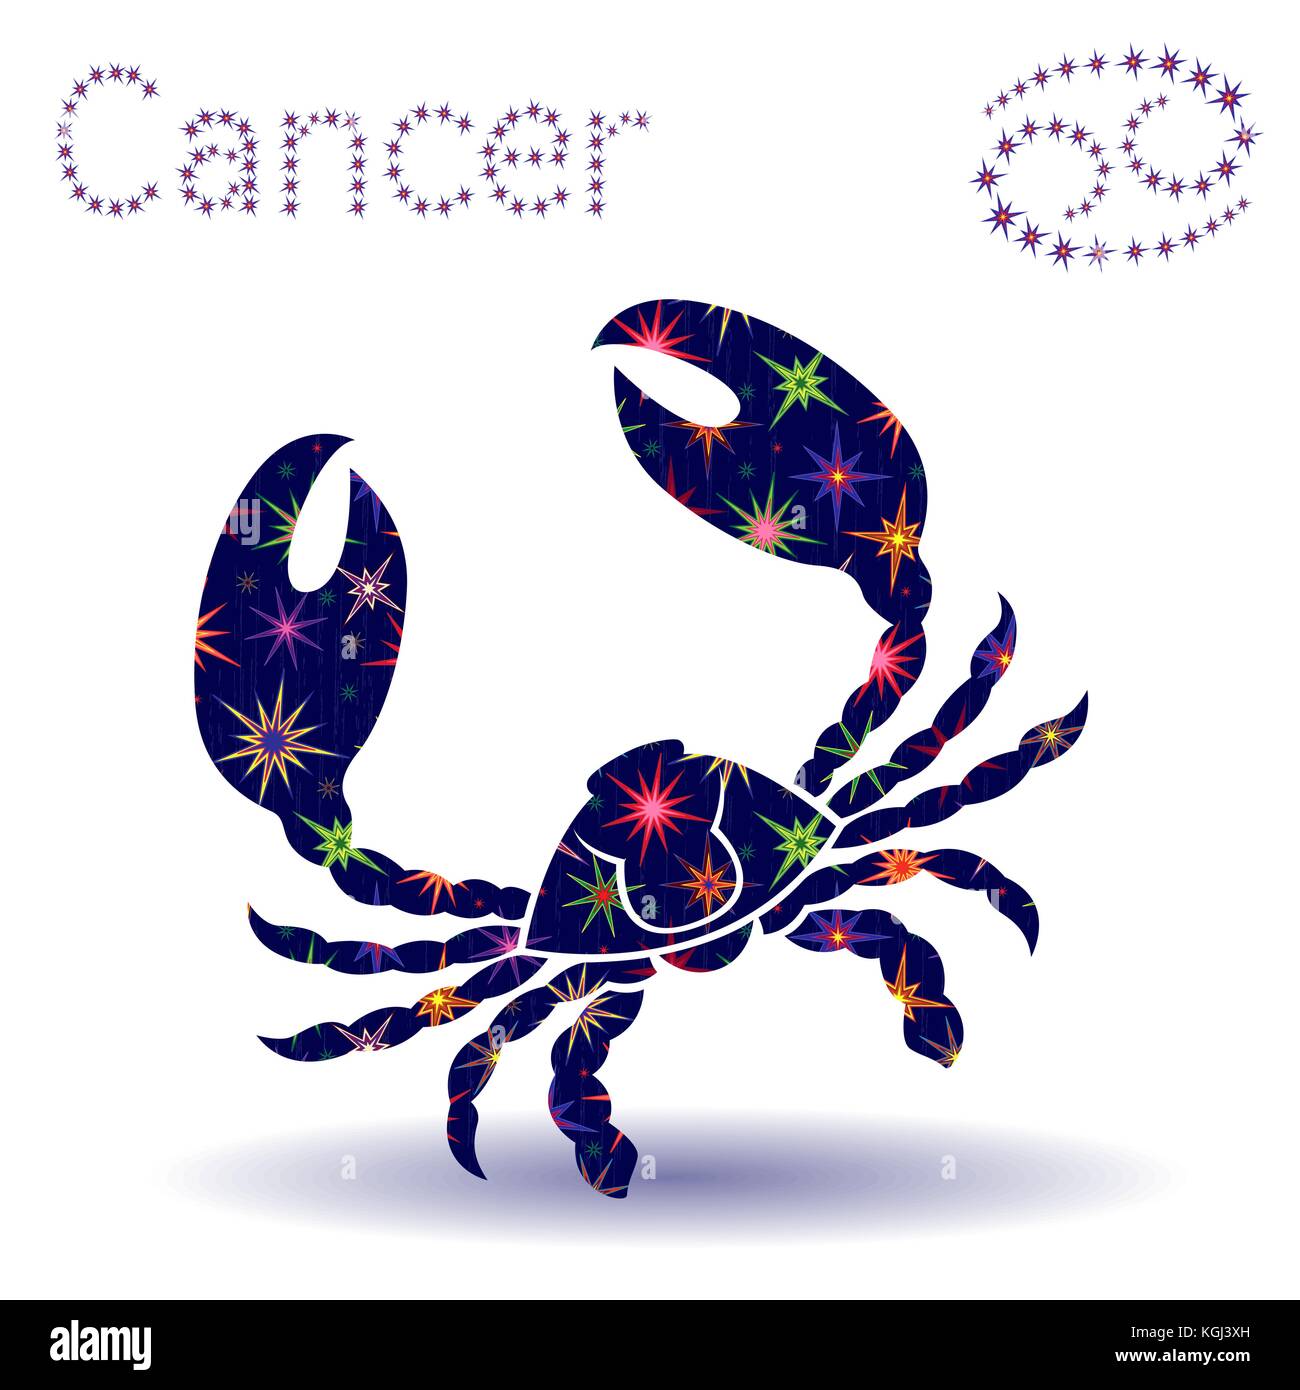 Segno zodiacale cancro, disegnato a mano stencil vettore con stelle stilizzate isolati su sfondo bianco Illustrazione Vettoriale